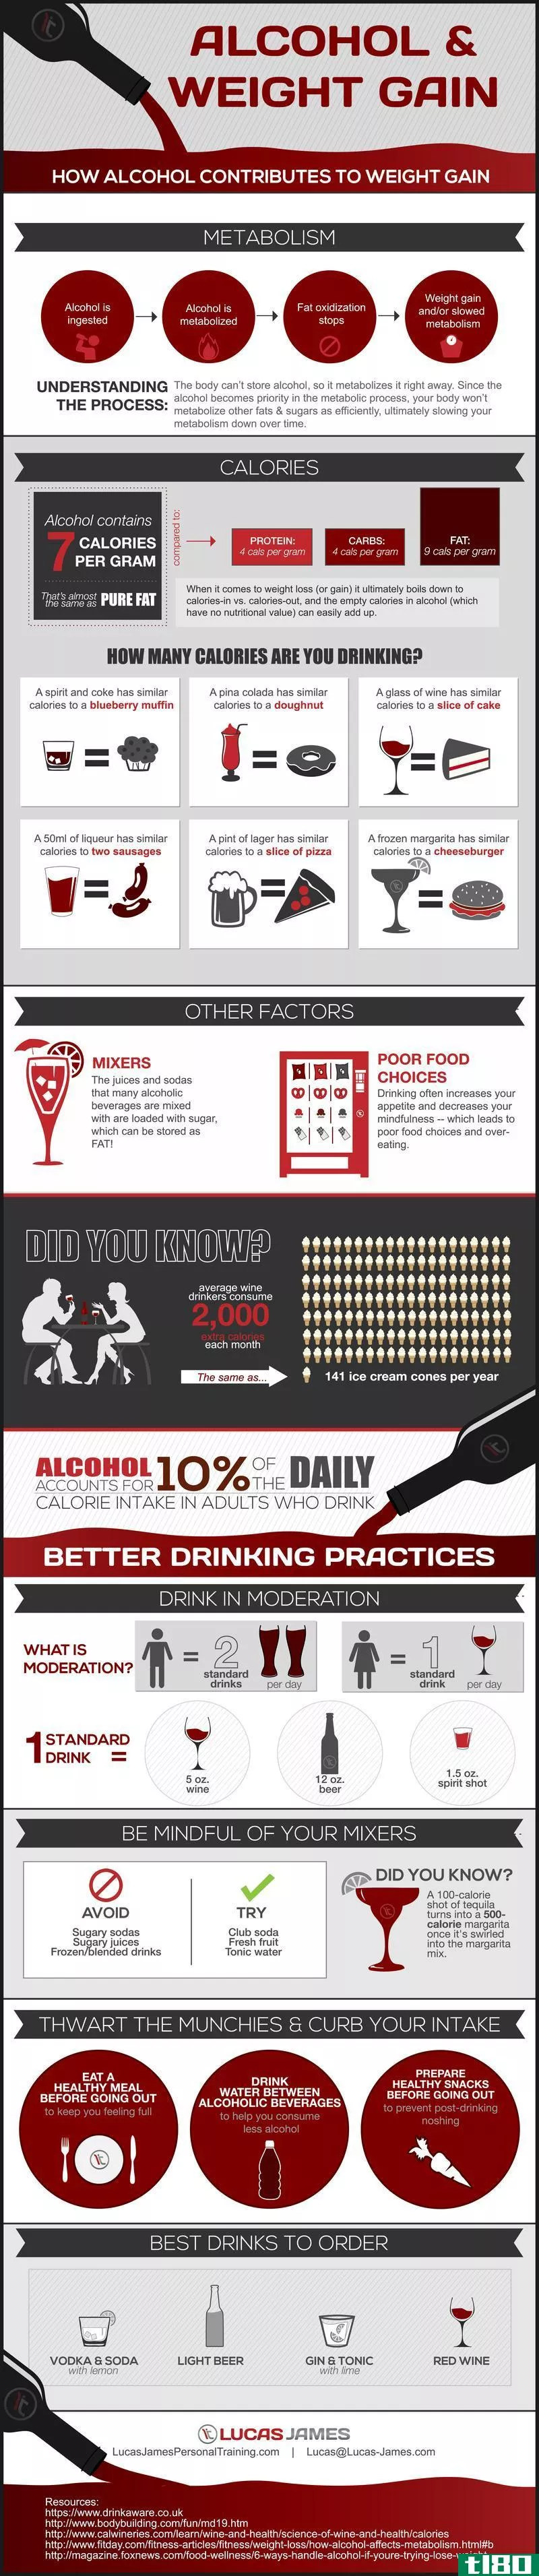 这张信息图显示了酒精是如何导致体重增加的